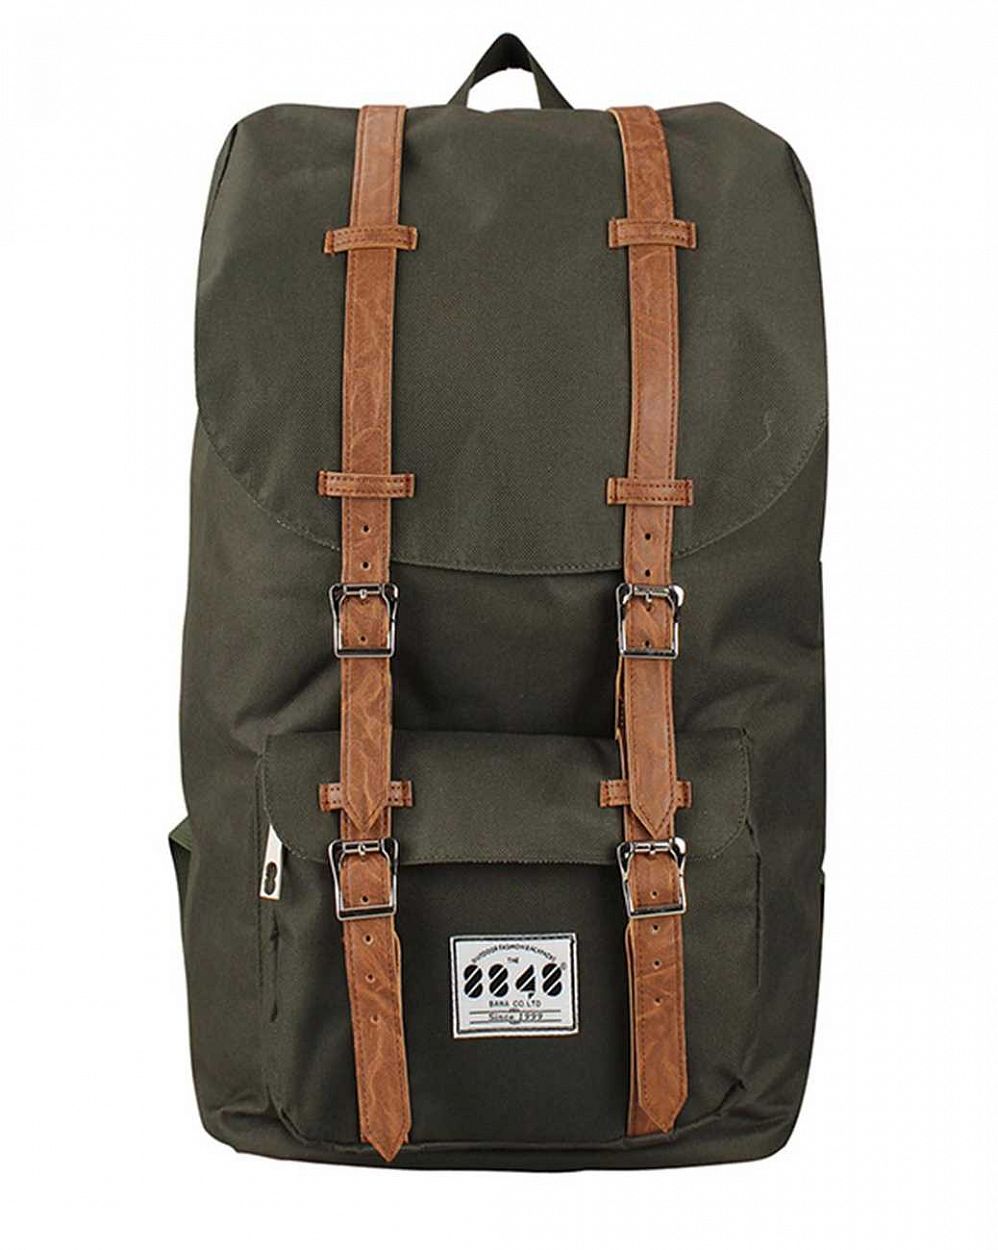 Рюкзак для путешествий с отделом для 15 ноутбука 8848 Dark Army отзывы